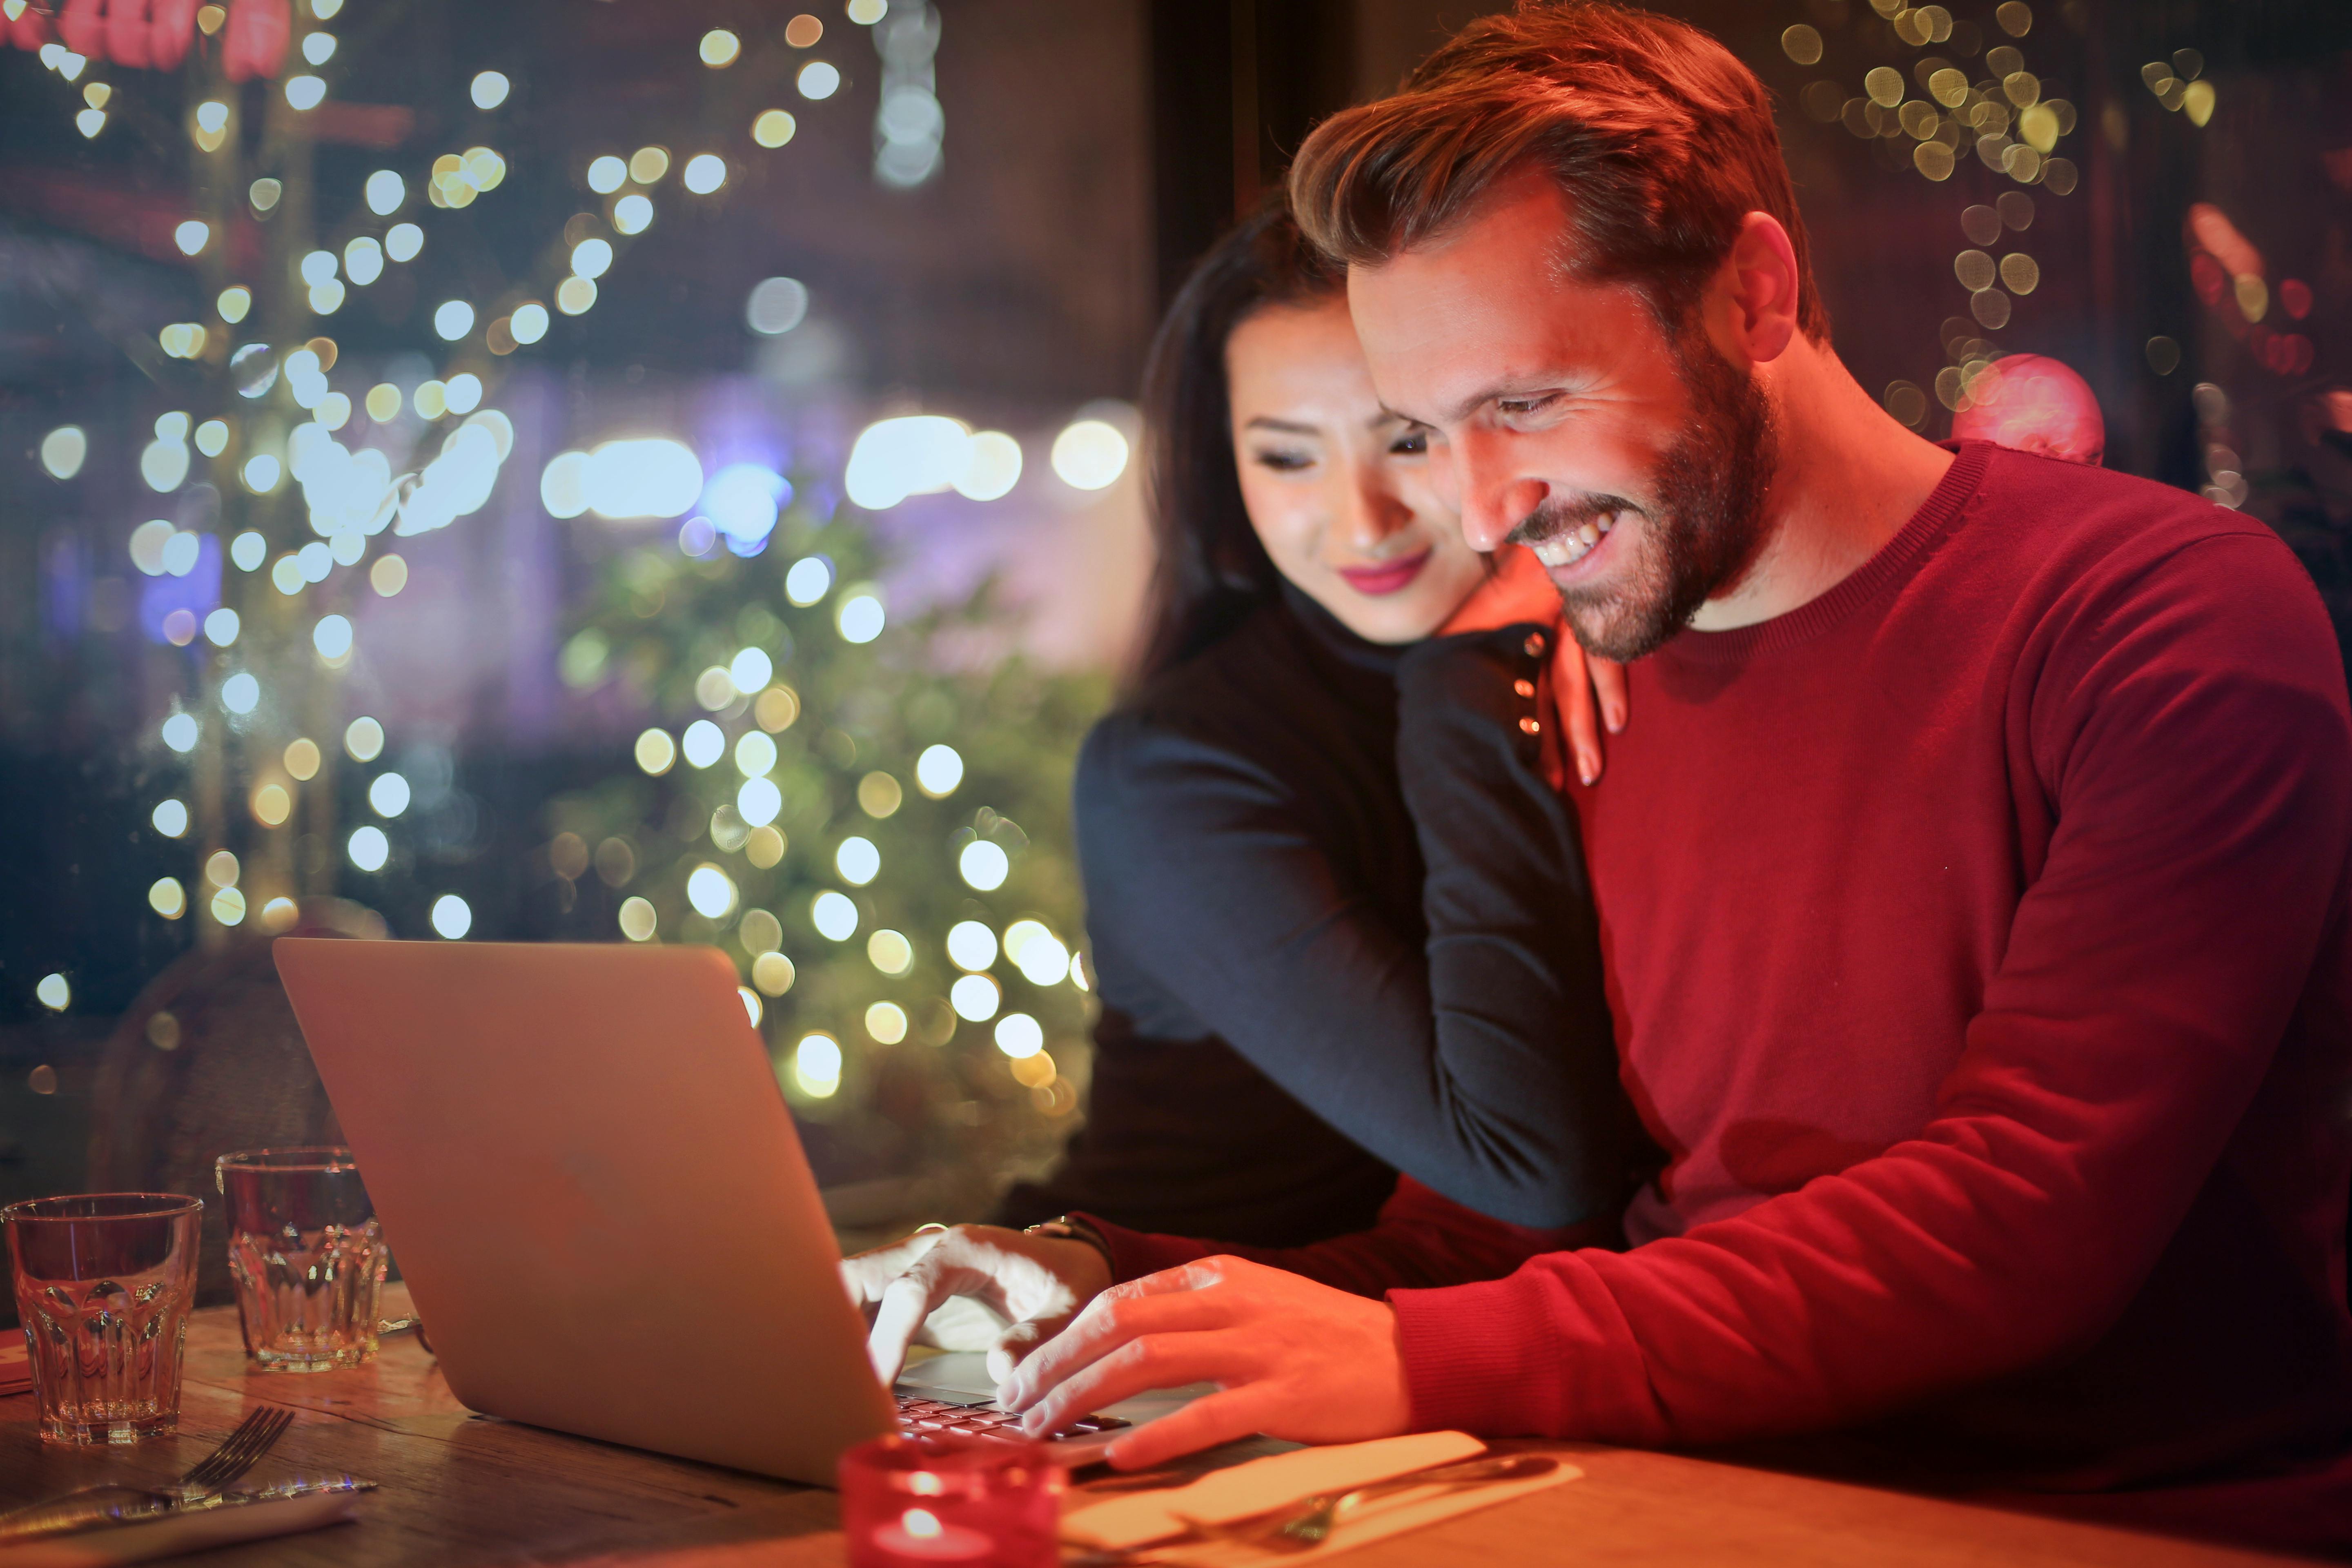 Ein glückliches Paar, das sich beim Anblick eines Laptops näher kommt | Quelle: Pexels